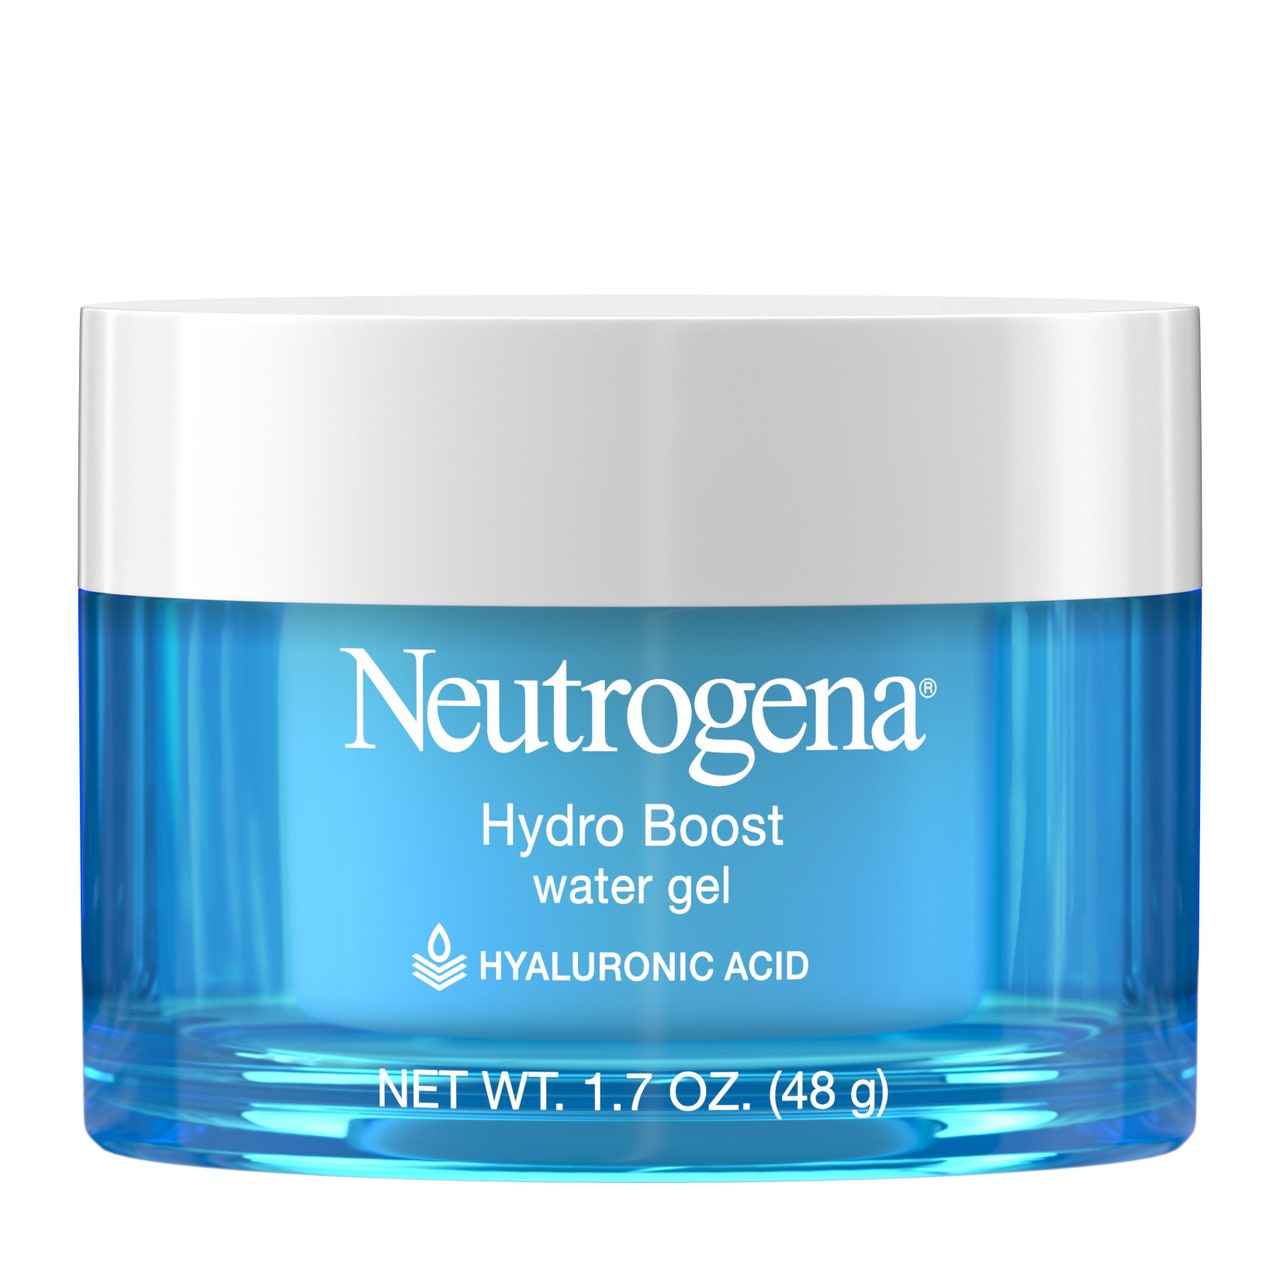 Neutrogena Hydro Boost Water Gel Gesichtsfeuchtigkeitscreme auf weißem Hintergrund